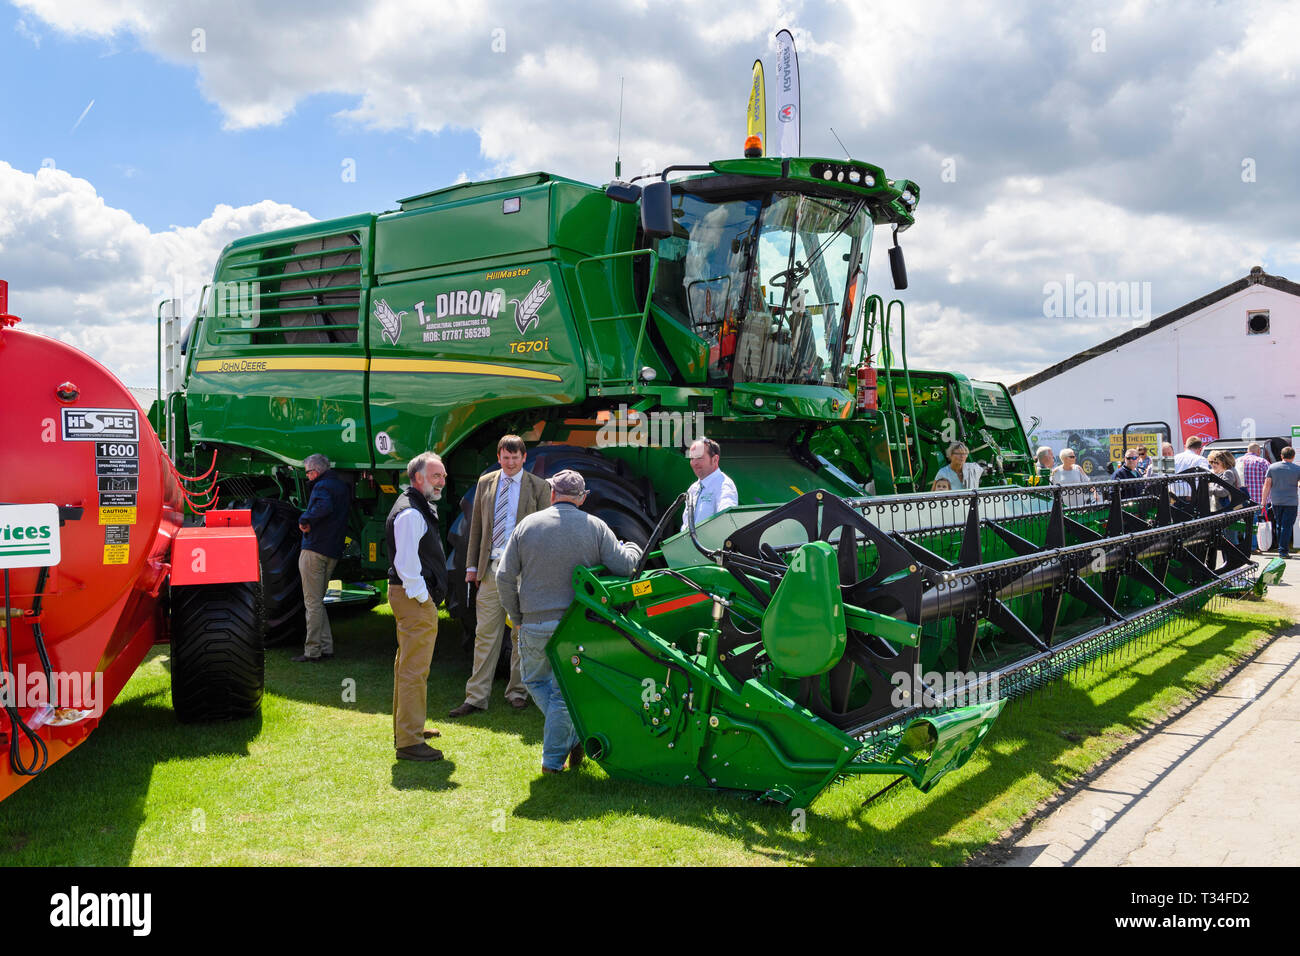 Leute & Blick auf landwirtschaftliche Maschinen (grün Mähdrescher) von Messestand Anzeige - Tolle Yorkshire zeigen, Harrogate, England, UK. Stockfoto